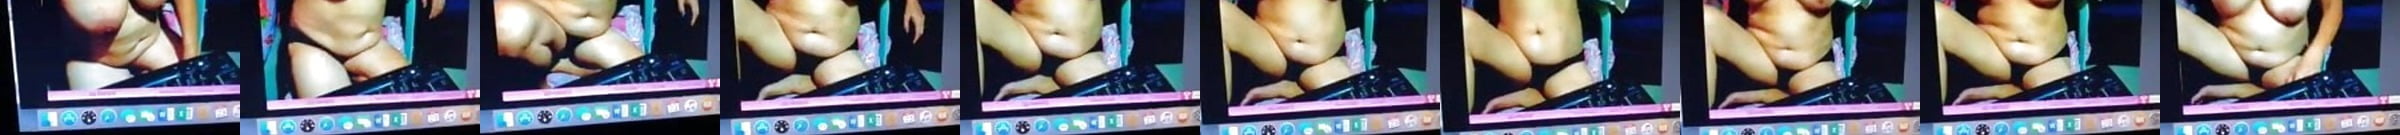 Filipina Granny Porn Videos 2 Xhamster